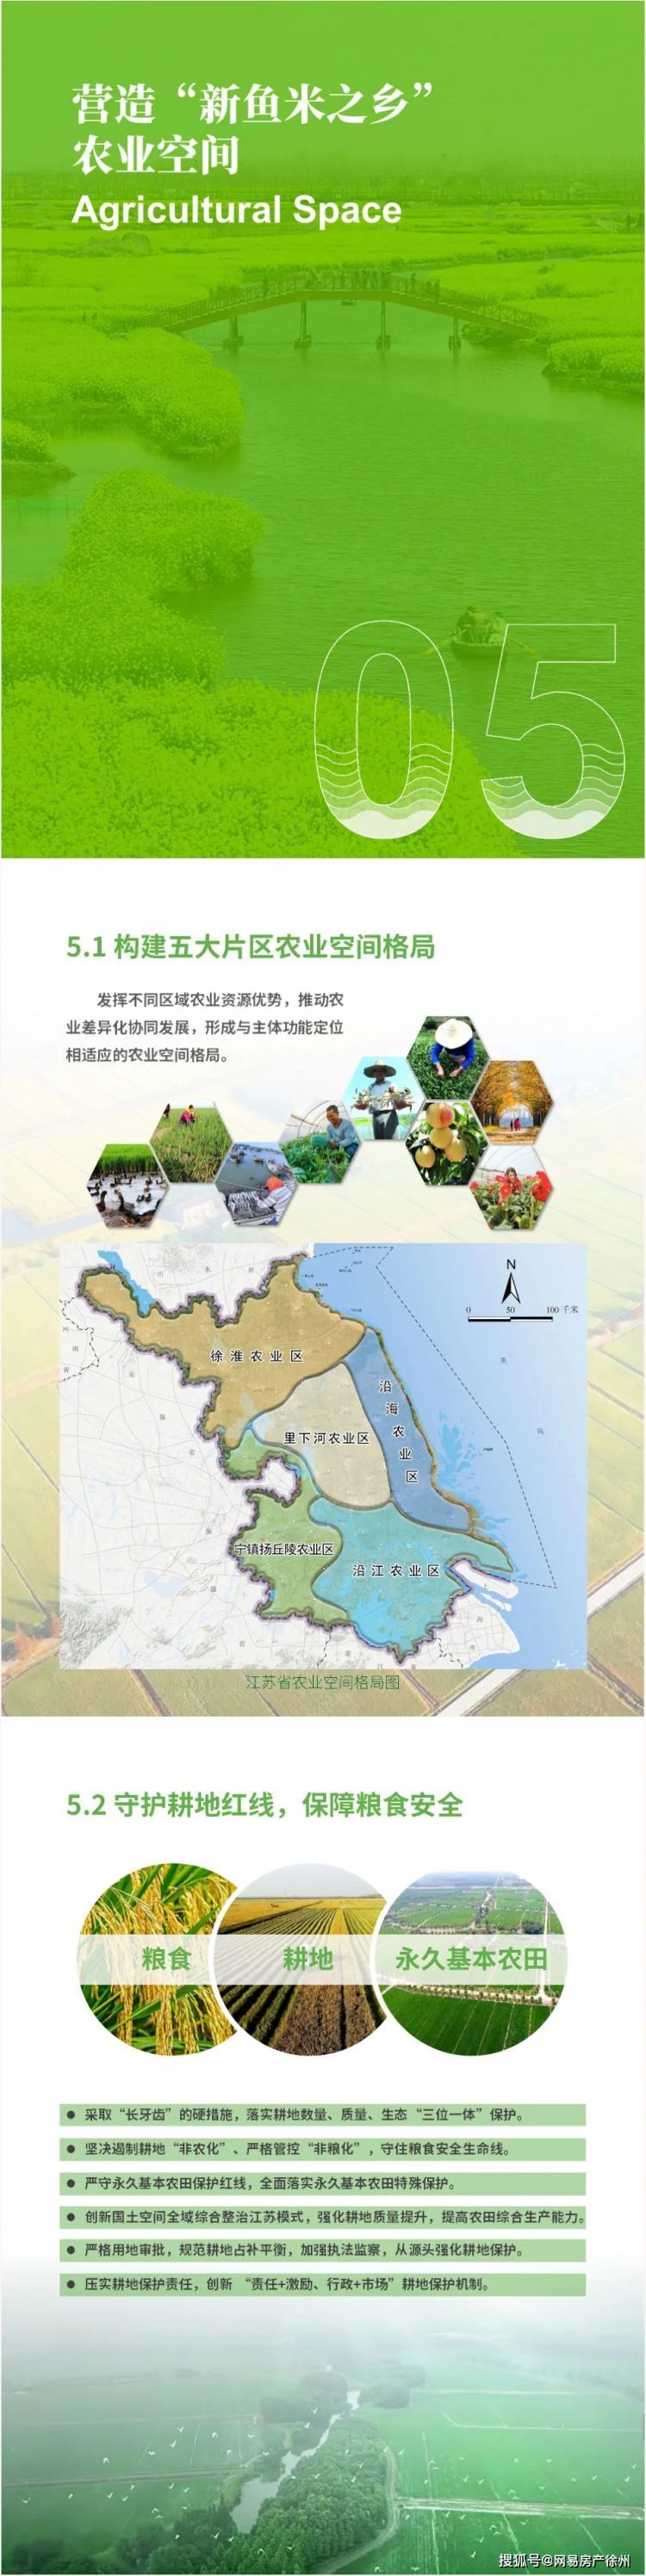 最新规划！江苏将3大极核都市圈，徐州在列！